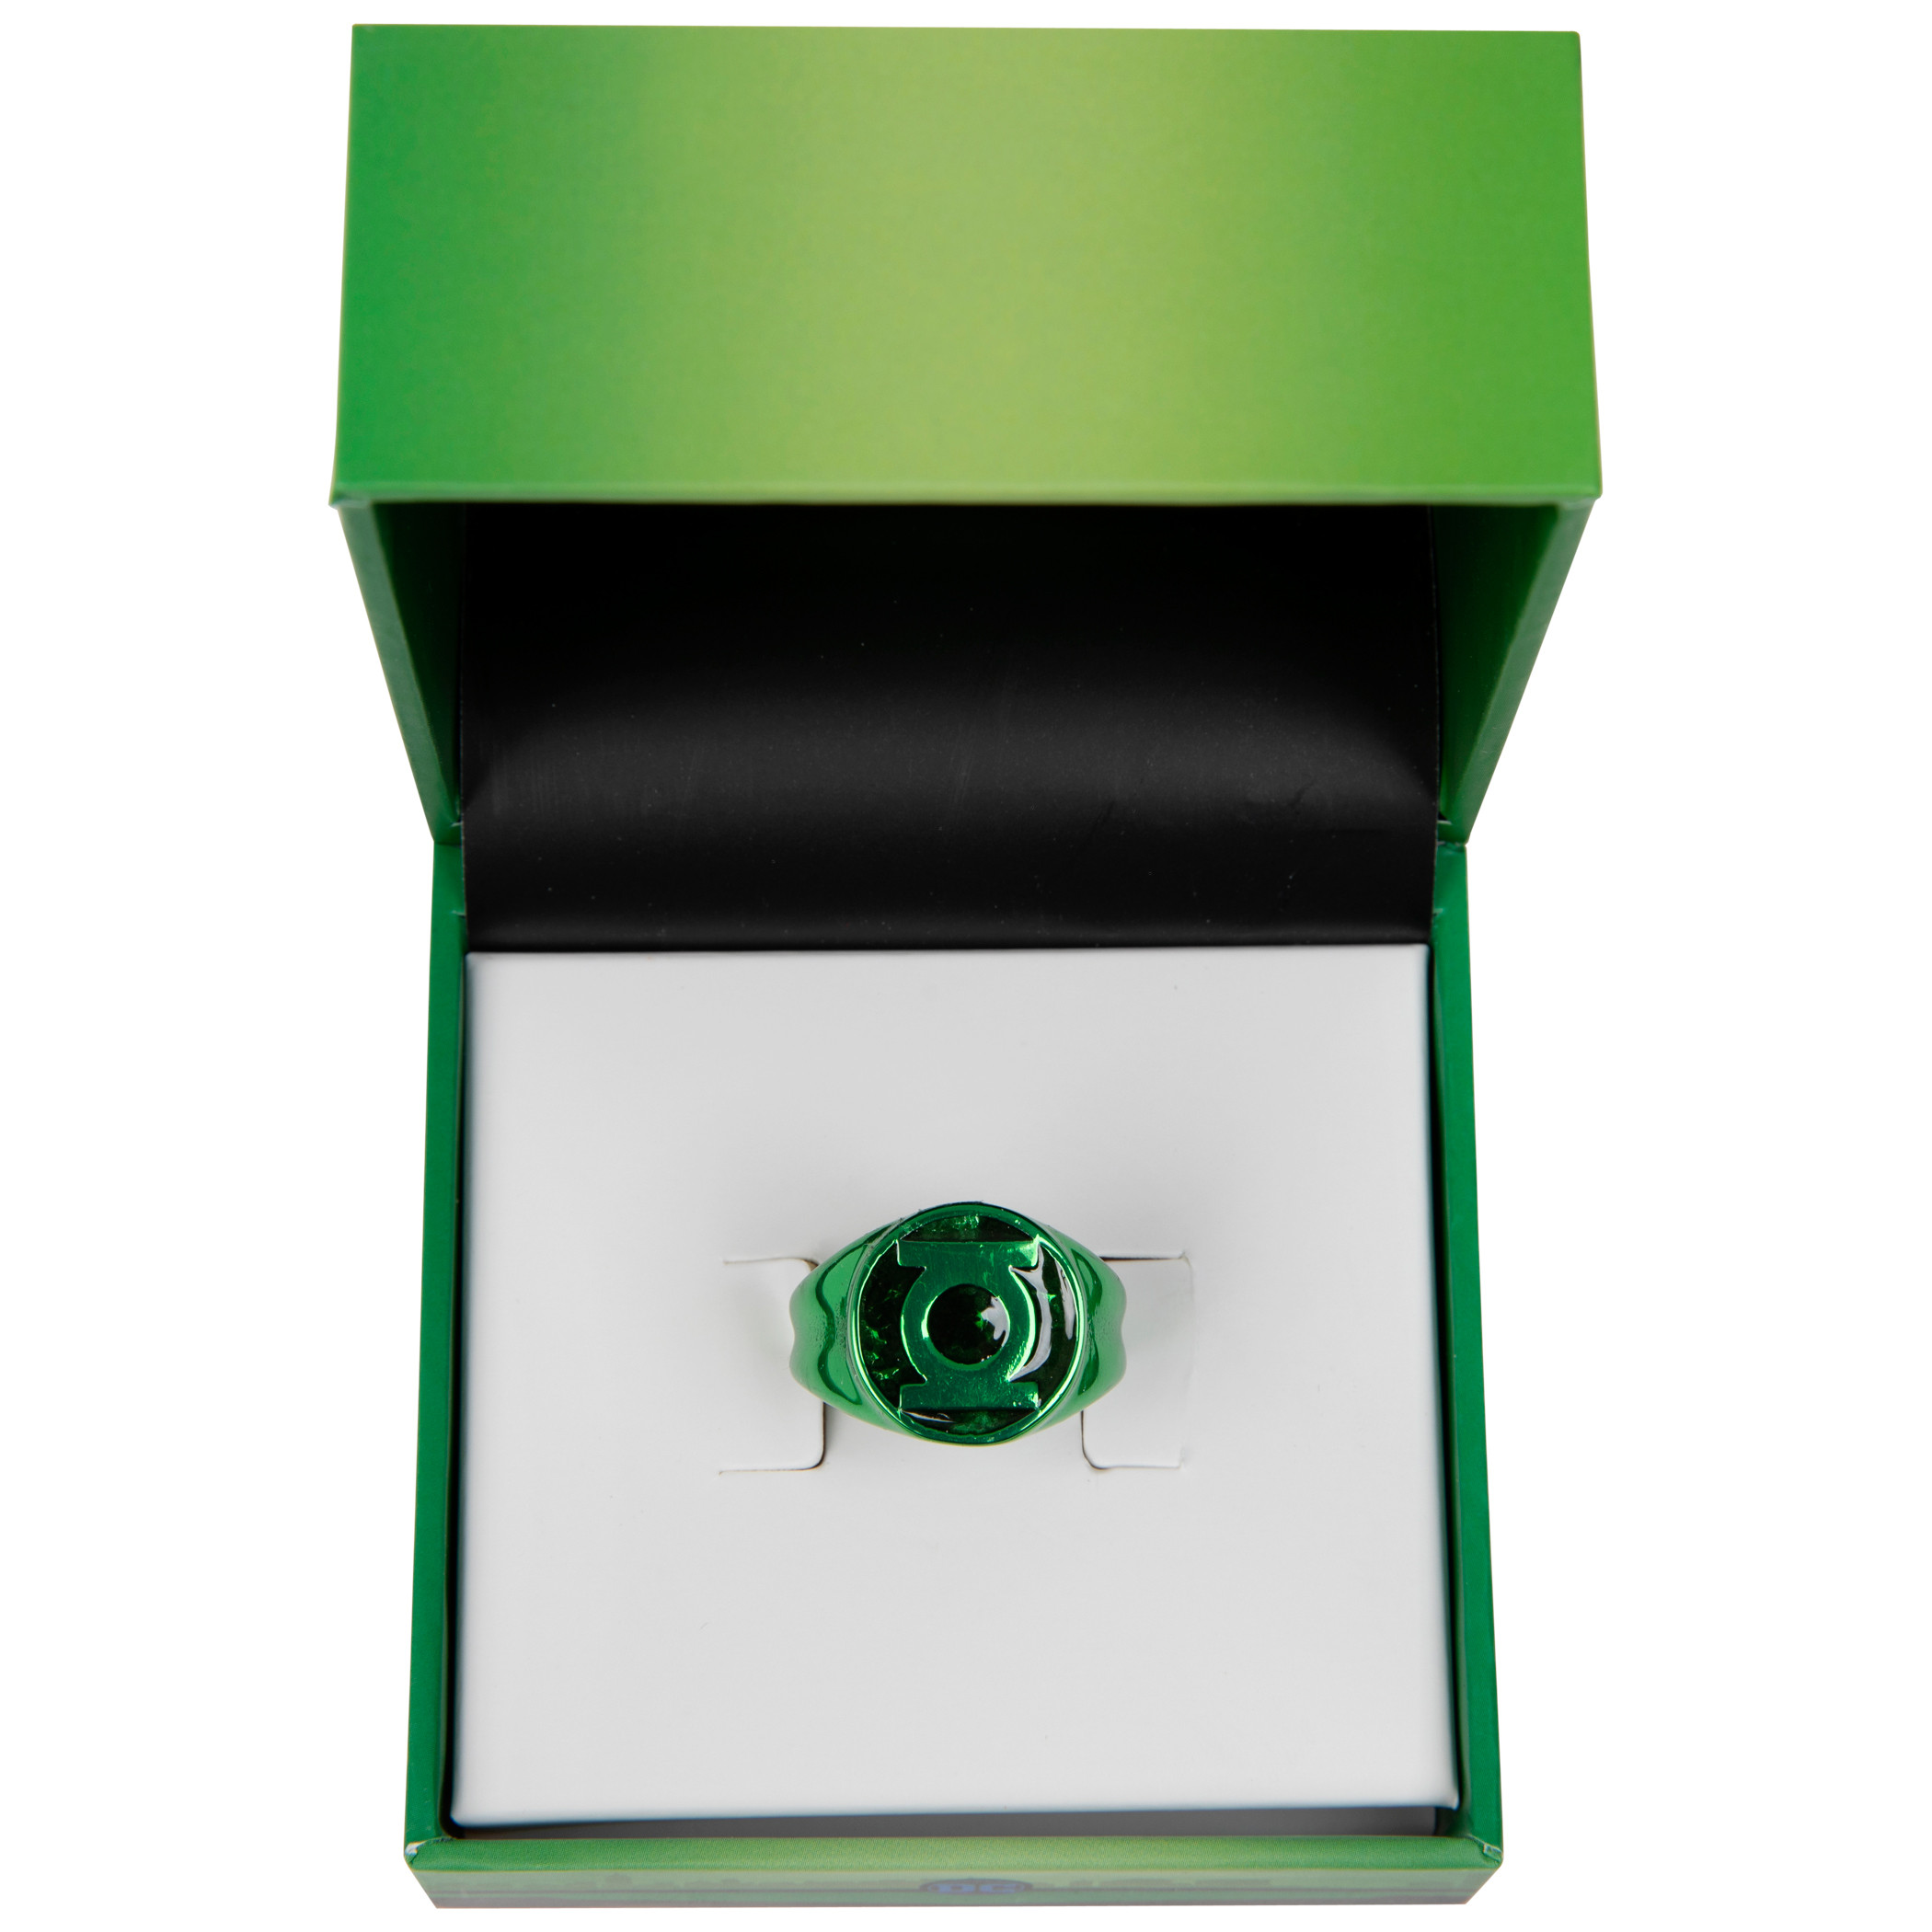 Moreel tijdelijk De waarheid vertellen Green Lantern Green Power Ring